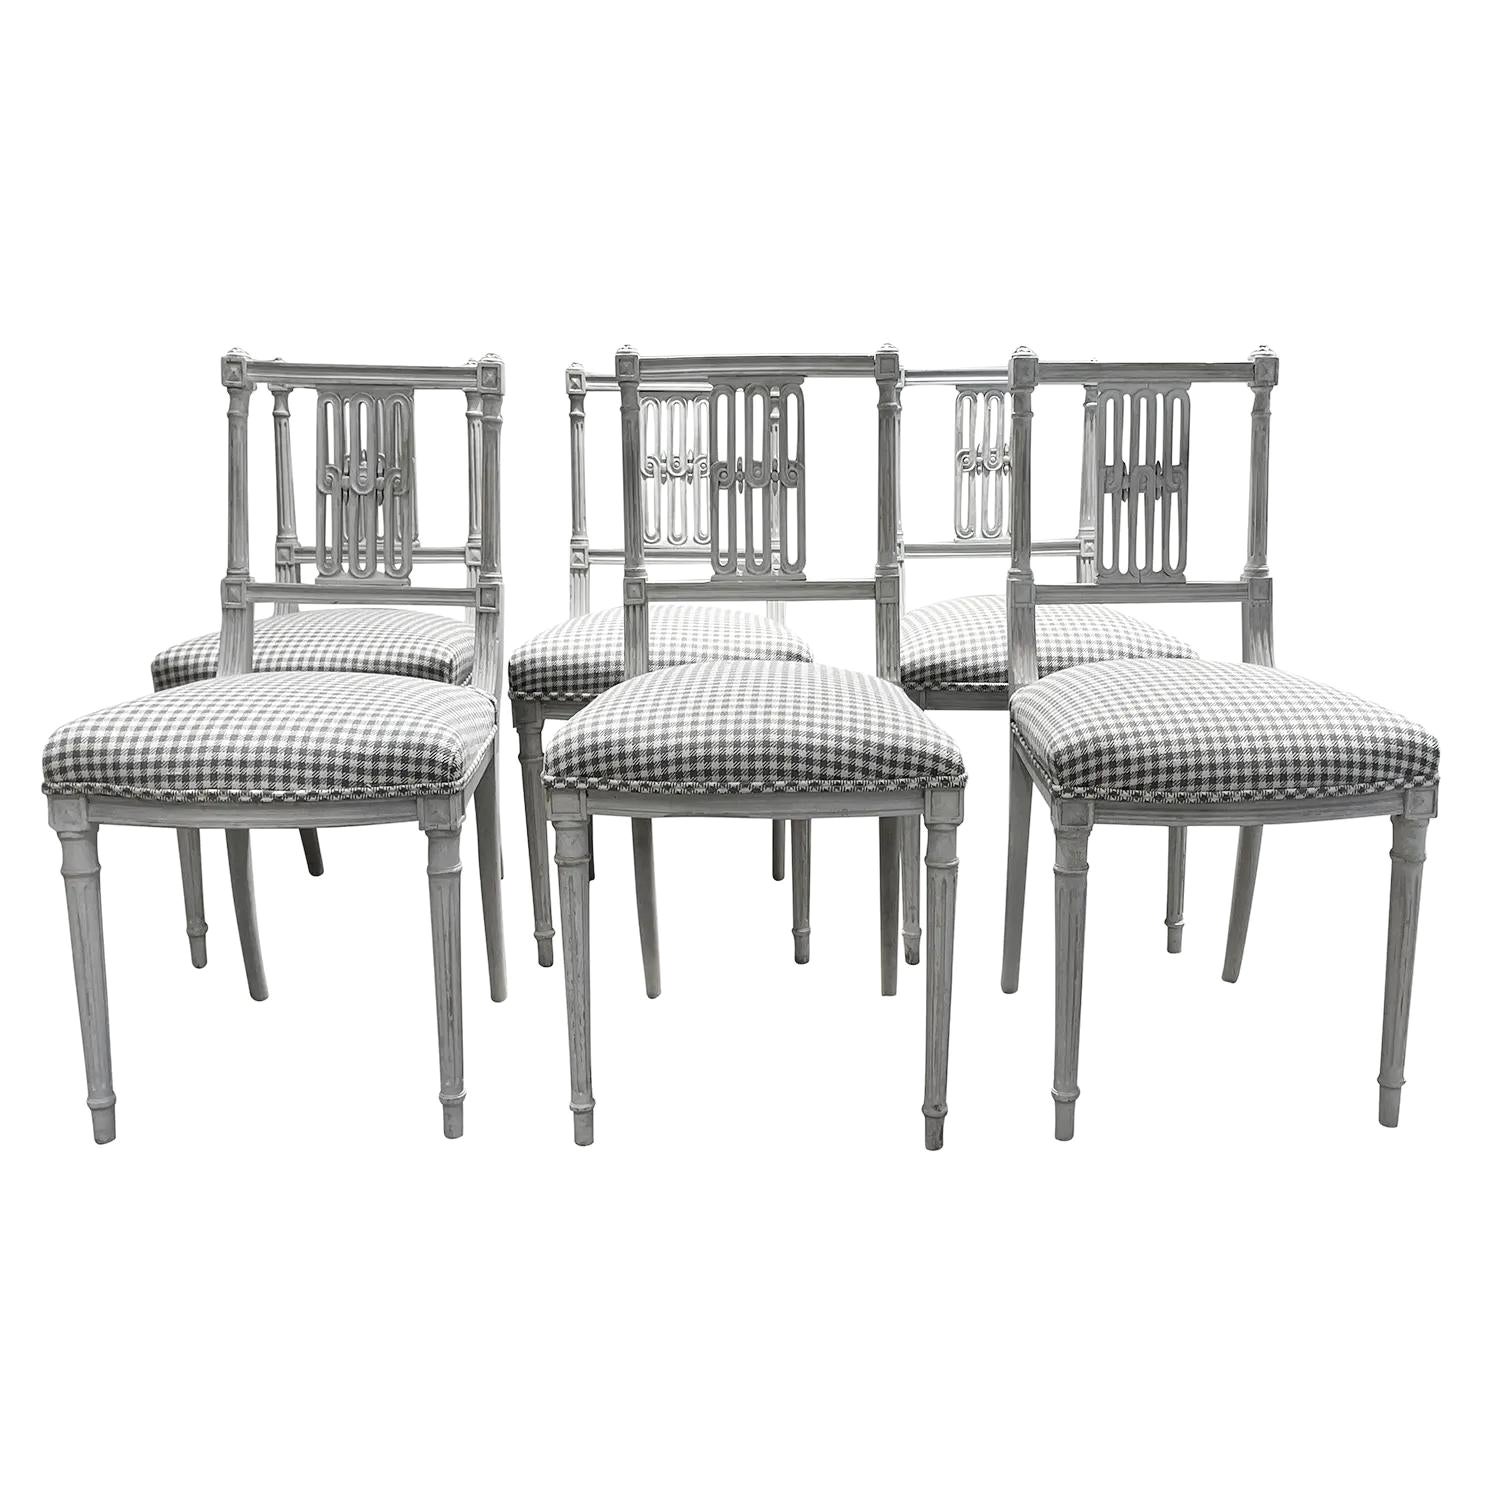 Ensemble de six petites chaises d'appoint scandinaves anciennes de style danois gris clair du 19ème siècle